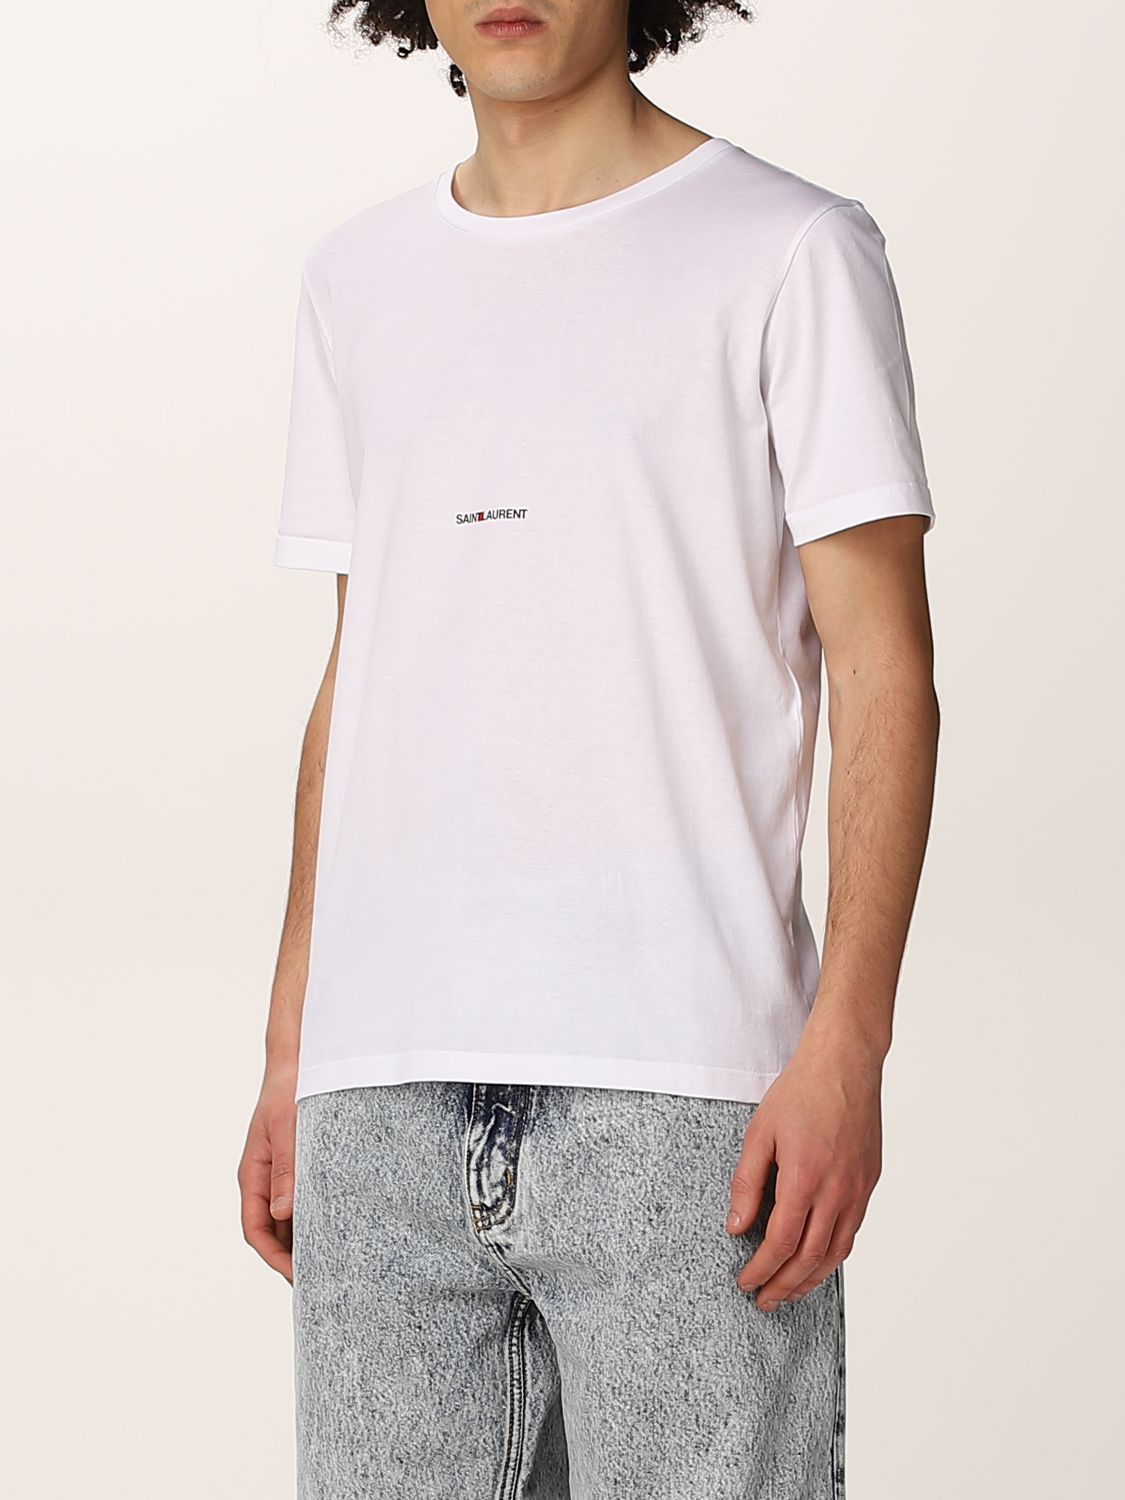 T-shirt Saint Laurent: Saint Laurent cotton t-shirt with logo white 4